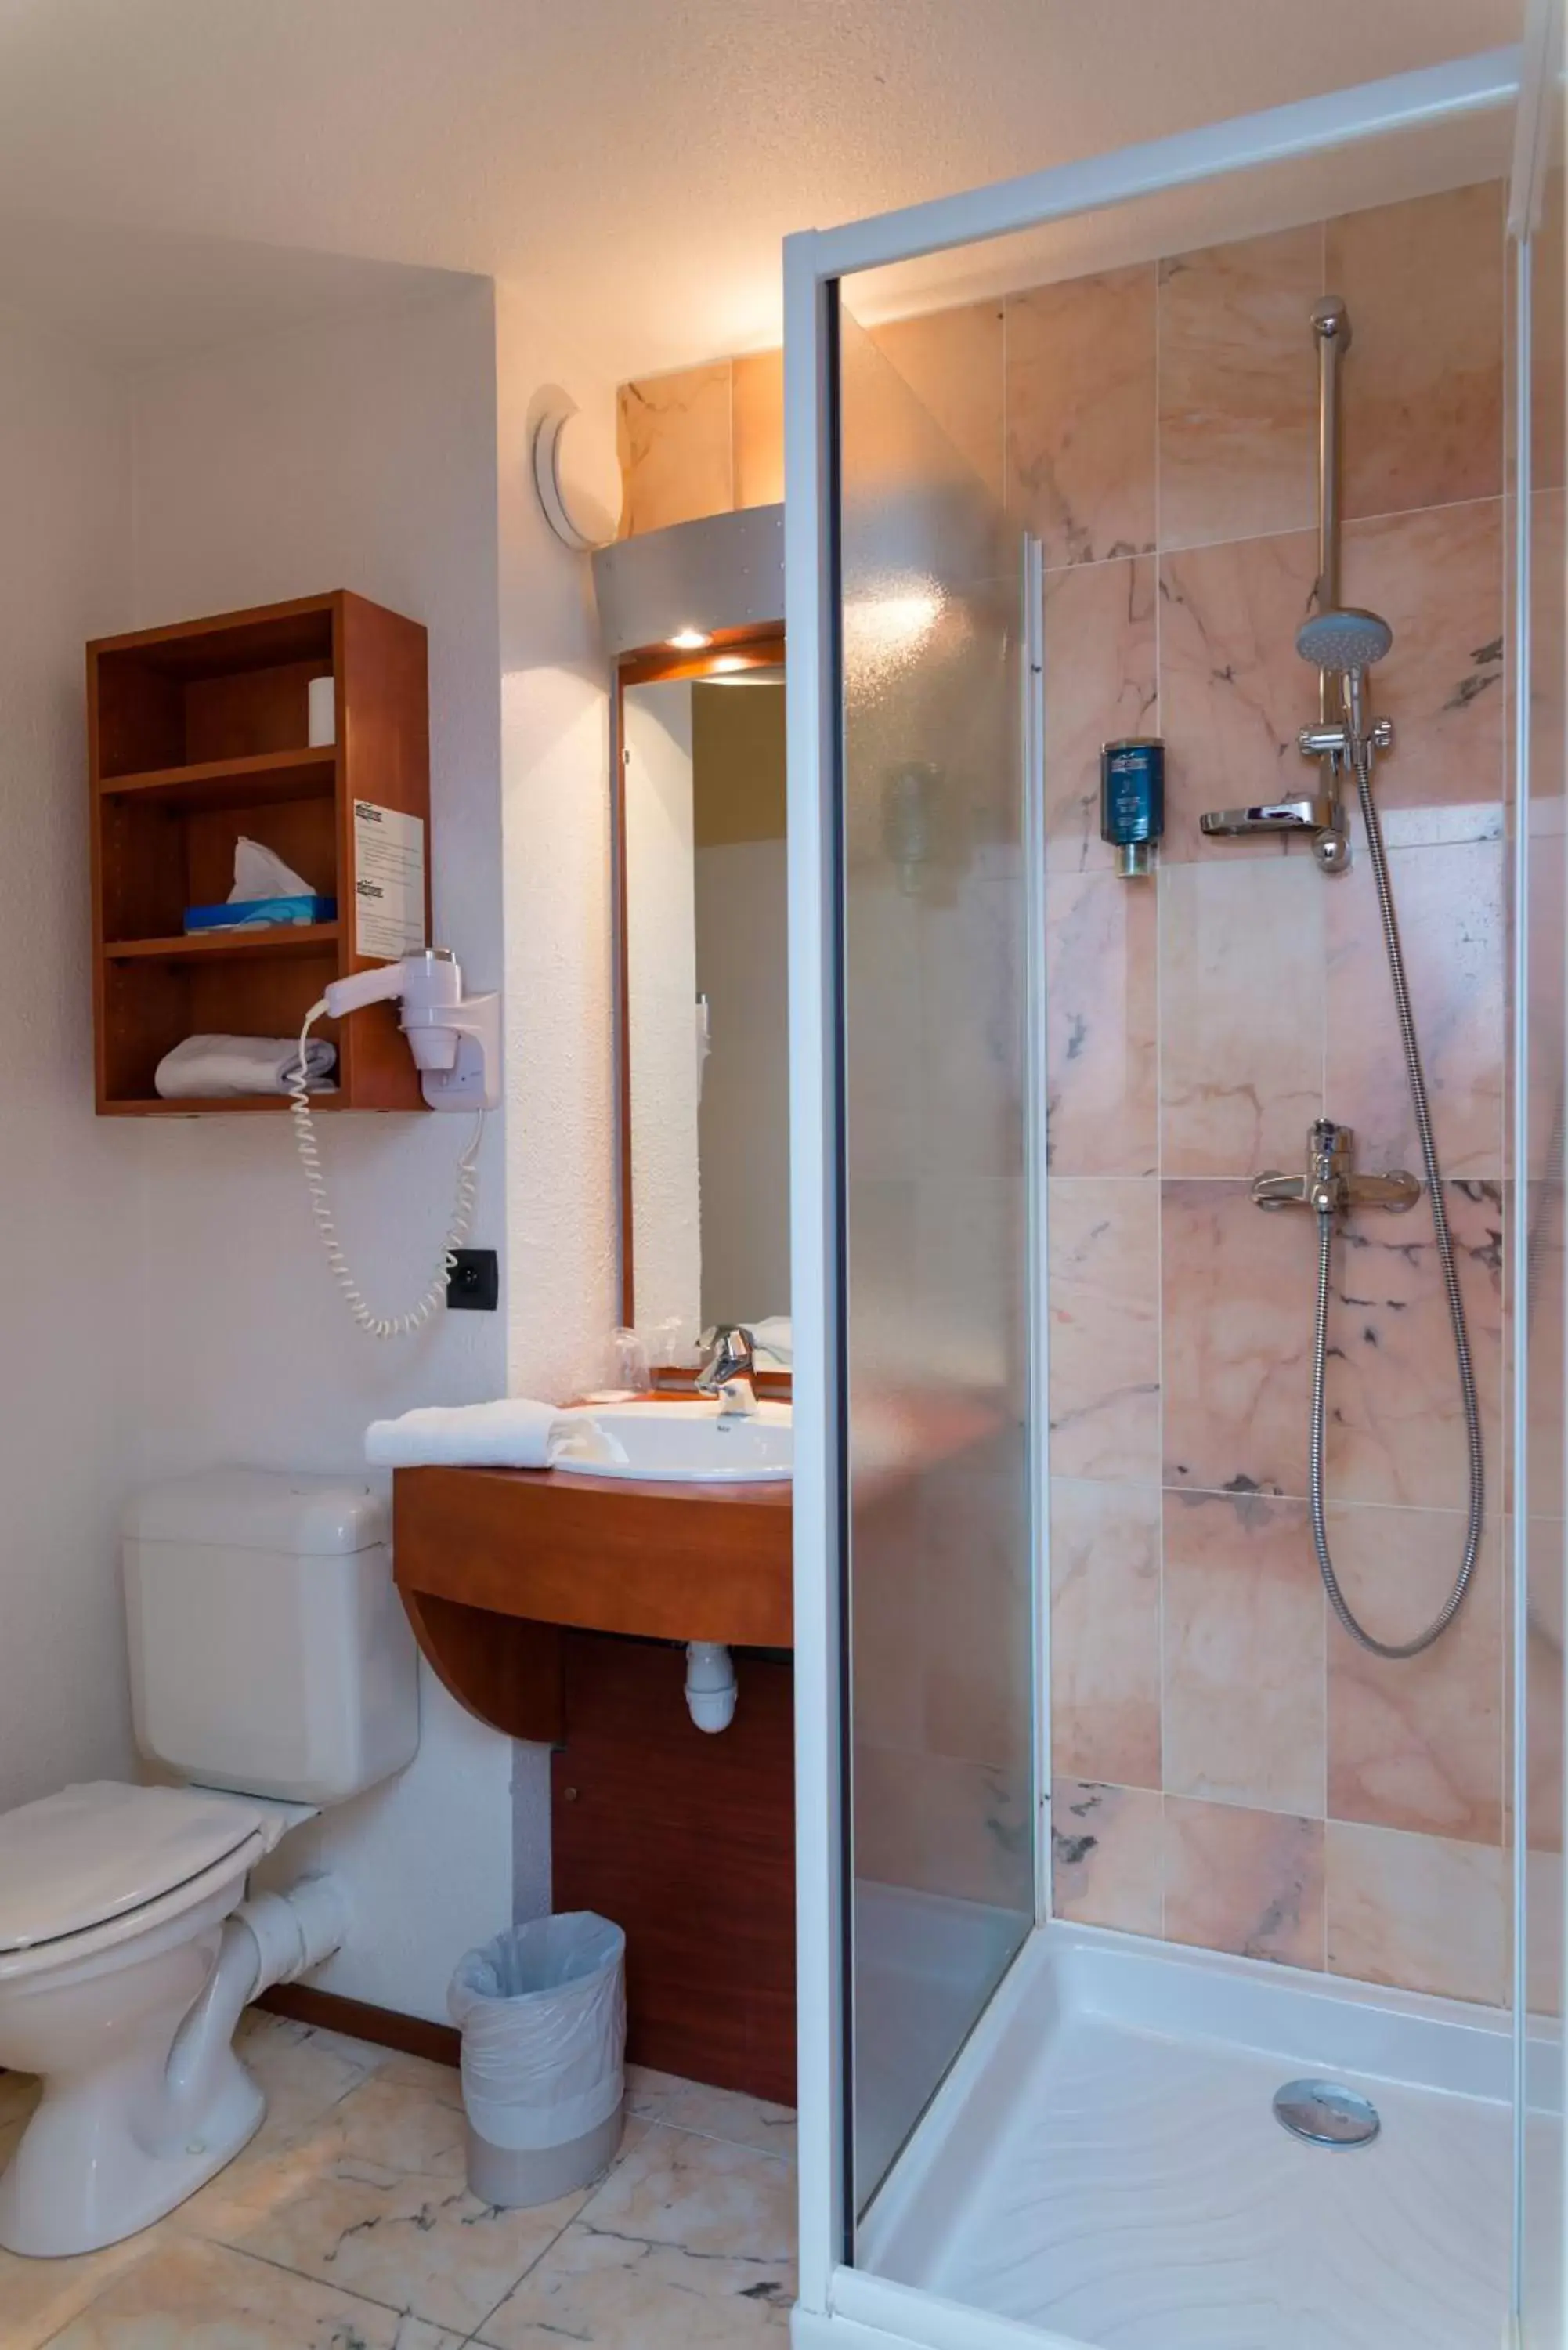 On site, Bathroom in Brit Hotel Rennes St Grégoire – Le Villeneuve